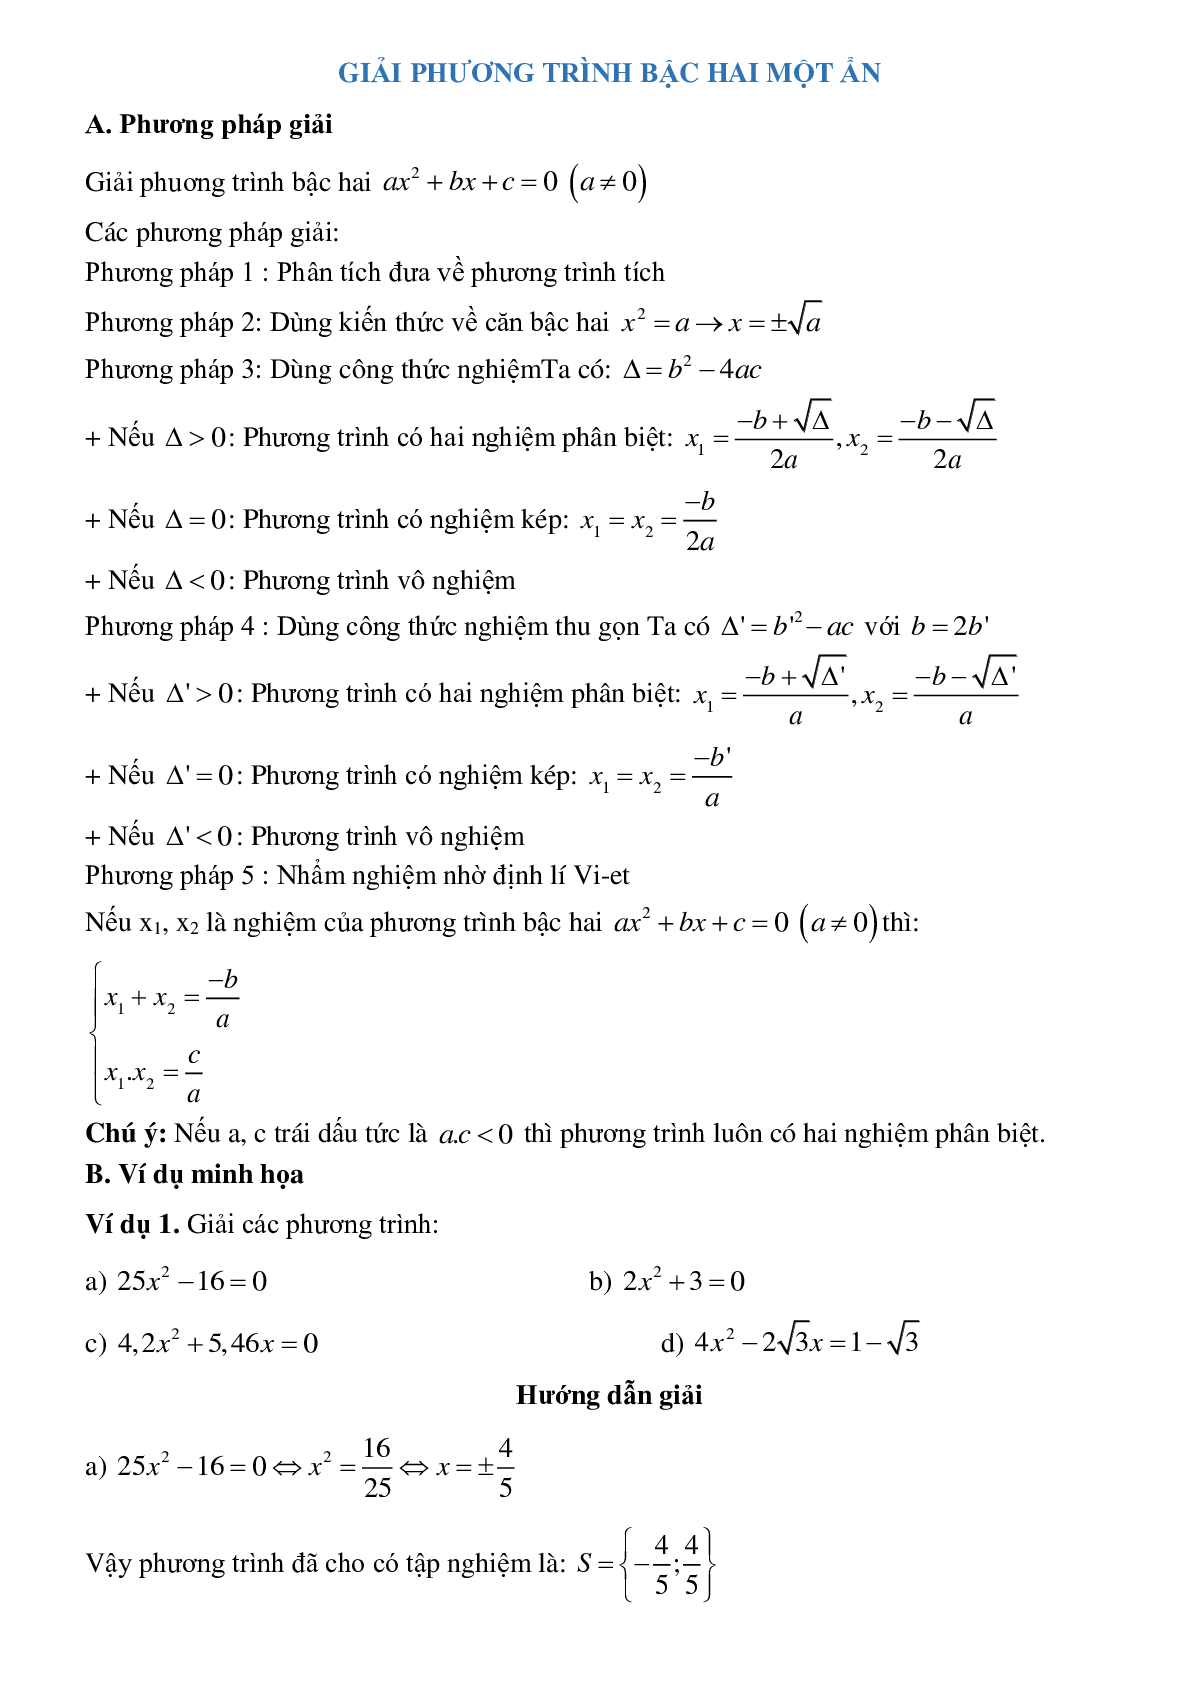 Giải phương trình aBài tập về Giải phương trình bậc hai một ẩn có lời giảibậc hai một ẩn (trang 1)